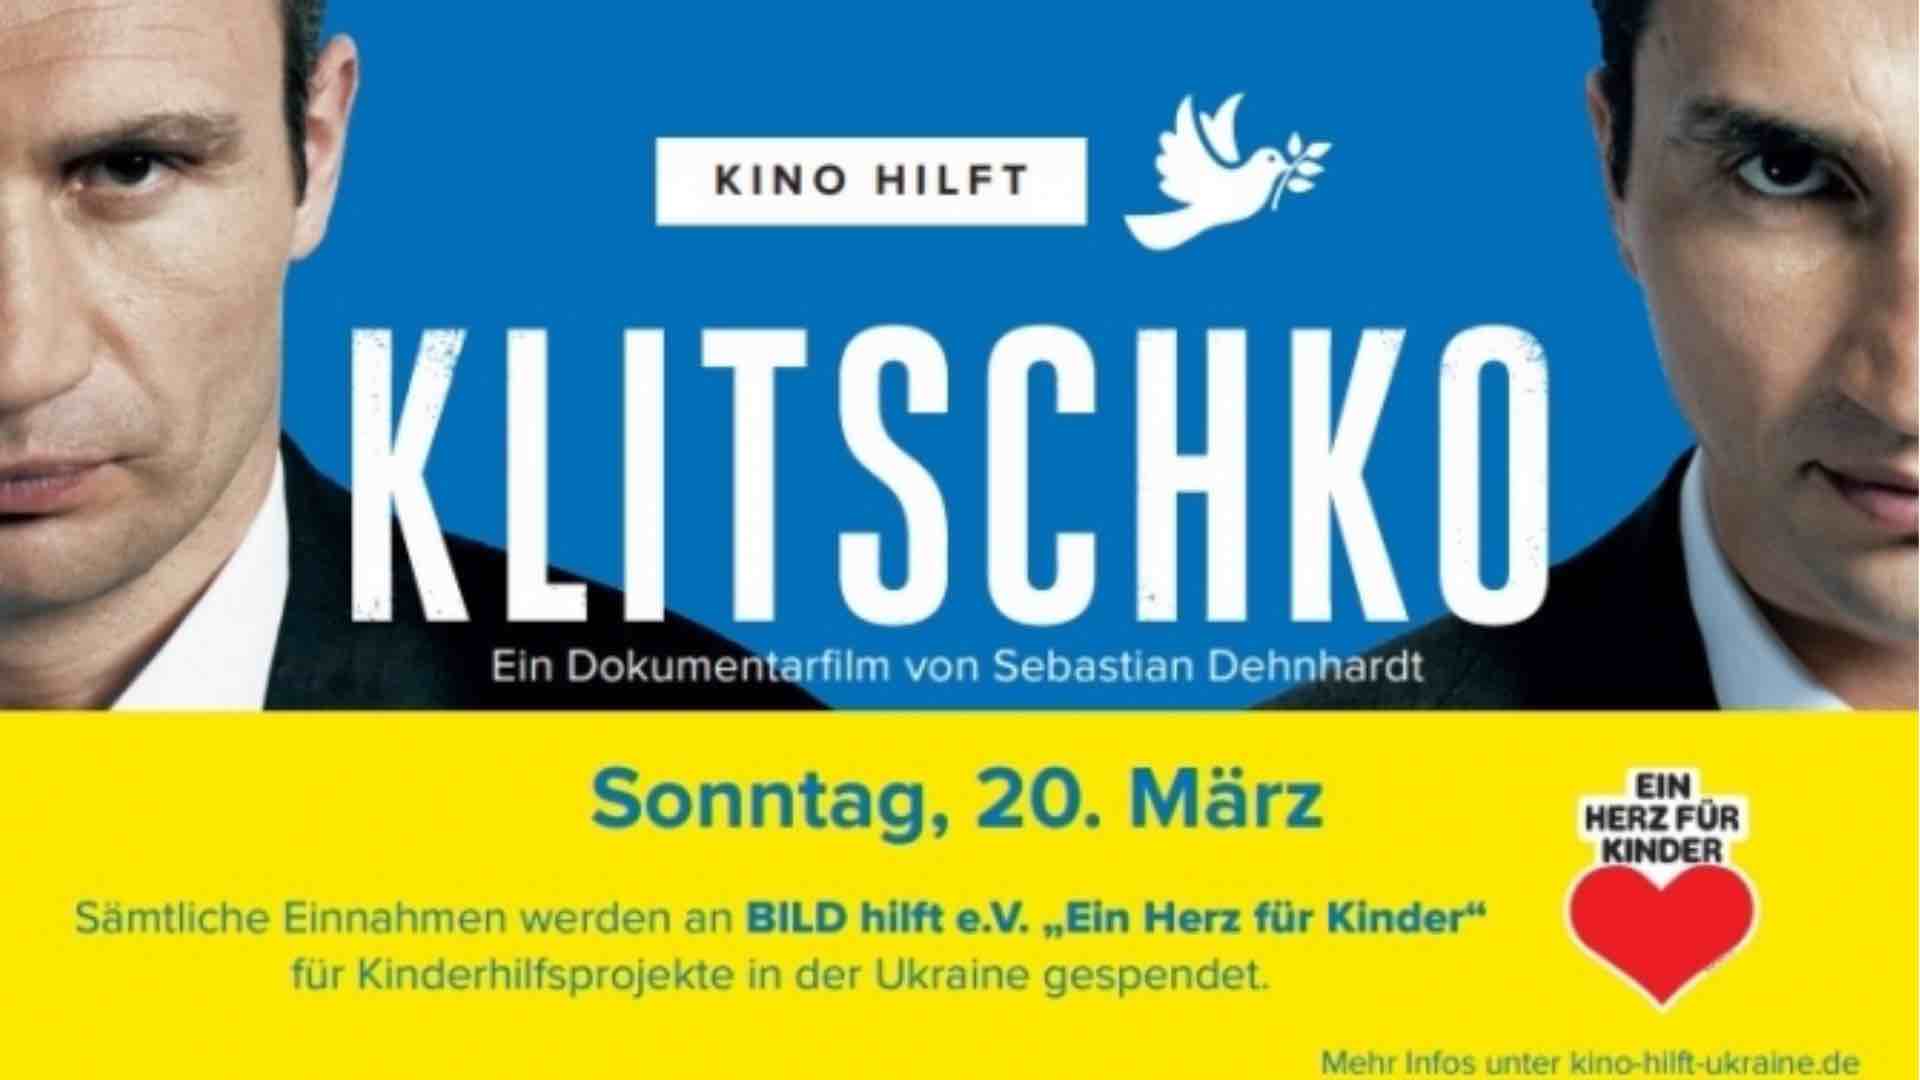 Klitschko Plakat